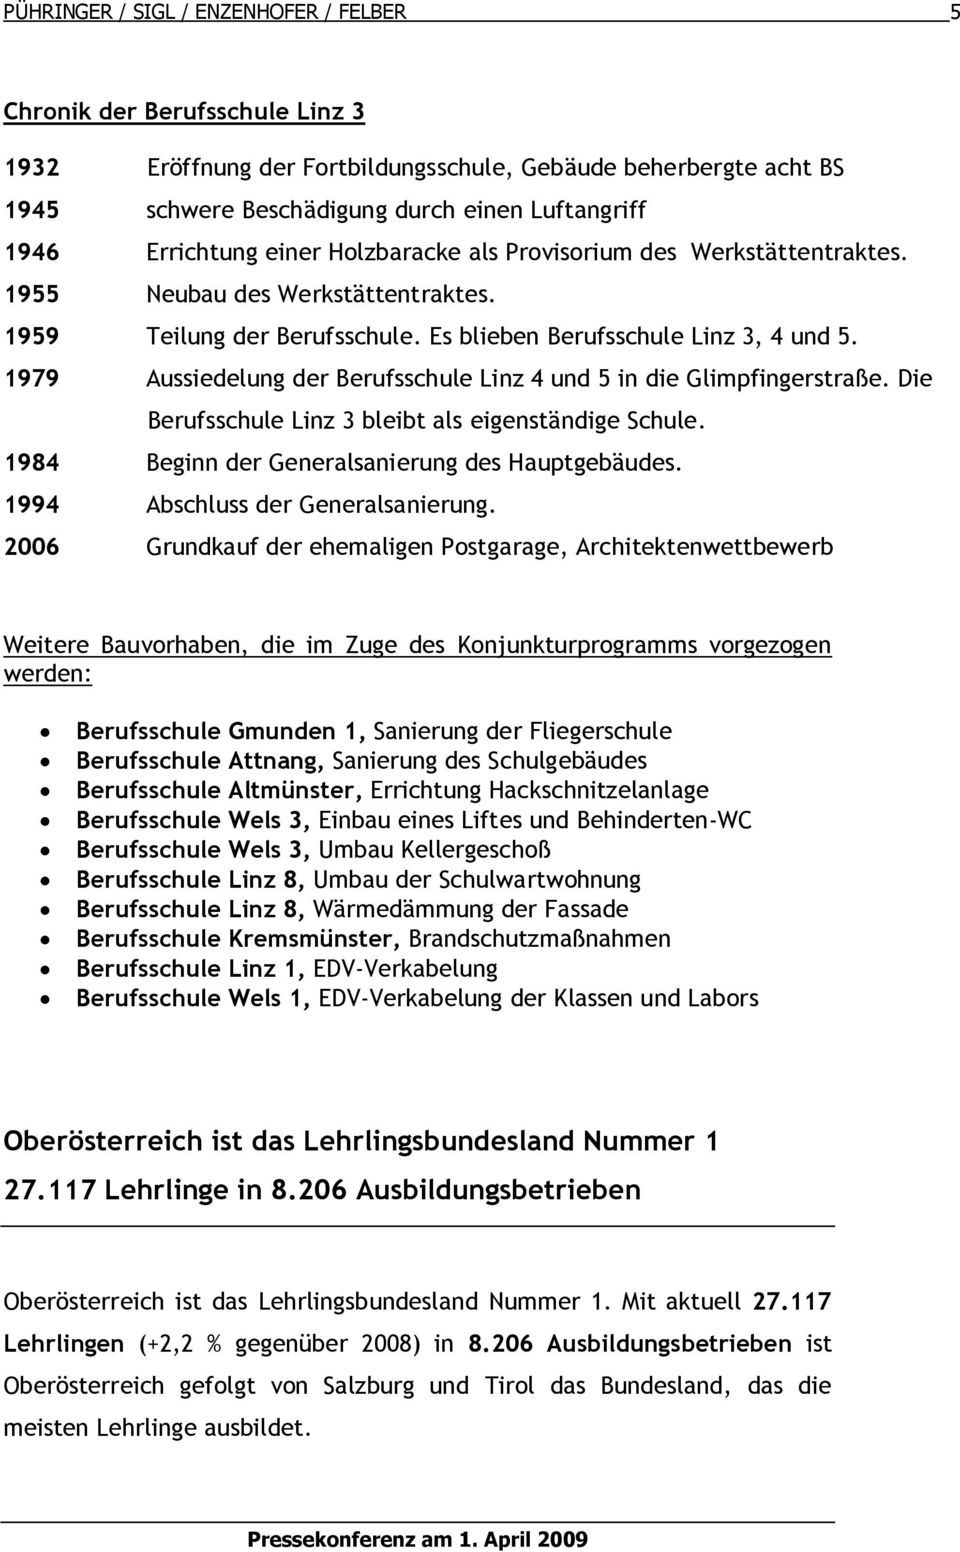 1979 Aussiedelung der Berufsschule Linz 4 und 5 in die Glimpfingerstraße. Die Berufsschule Linz 3 bleibt als eigenständige Schule. 1984 Beginn der Generalsanierung des Hauptgebäudes.